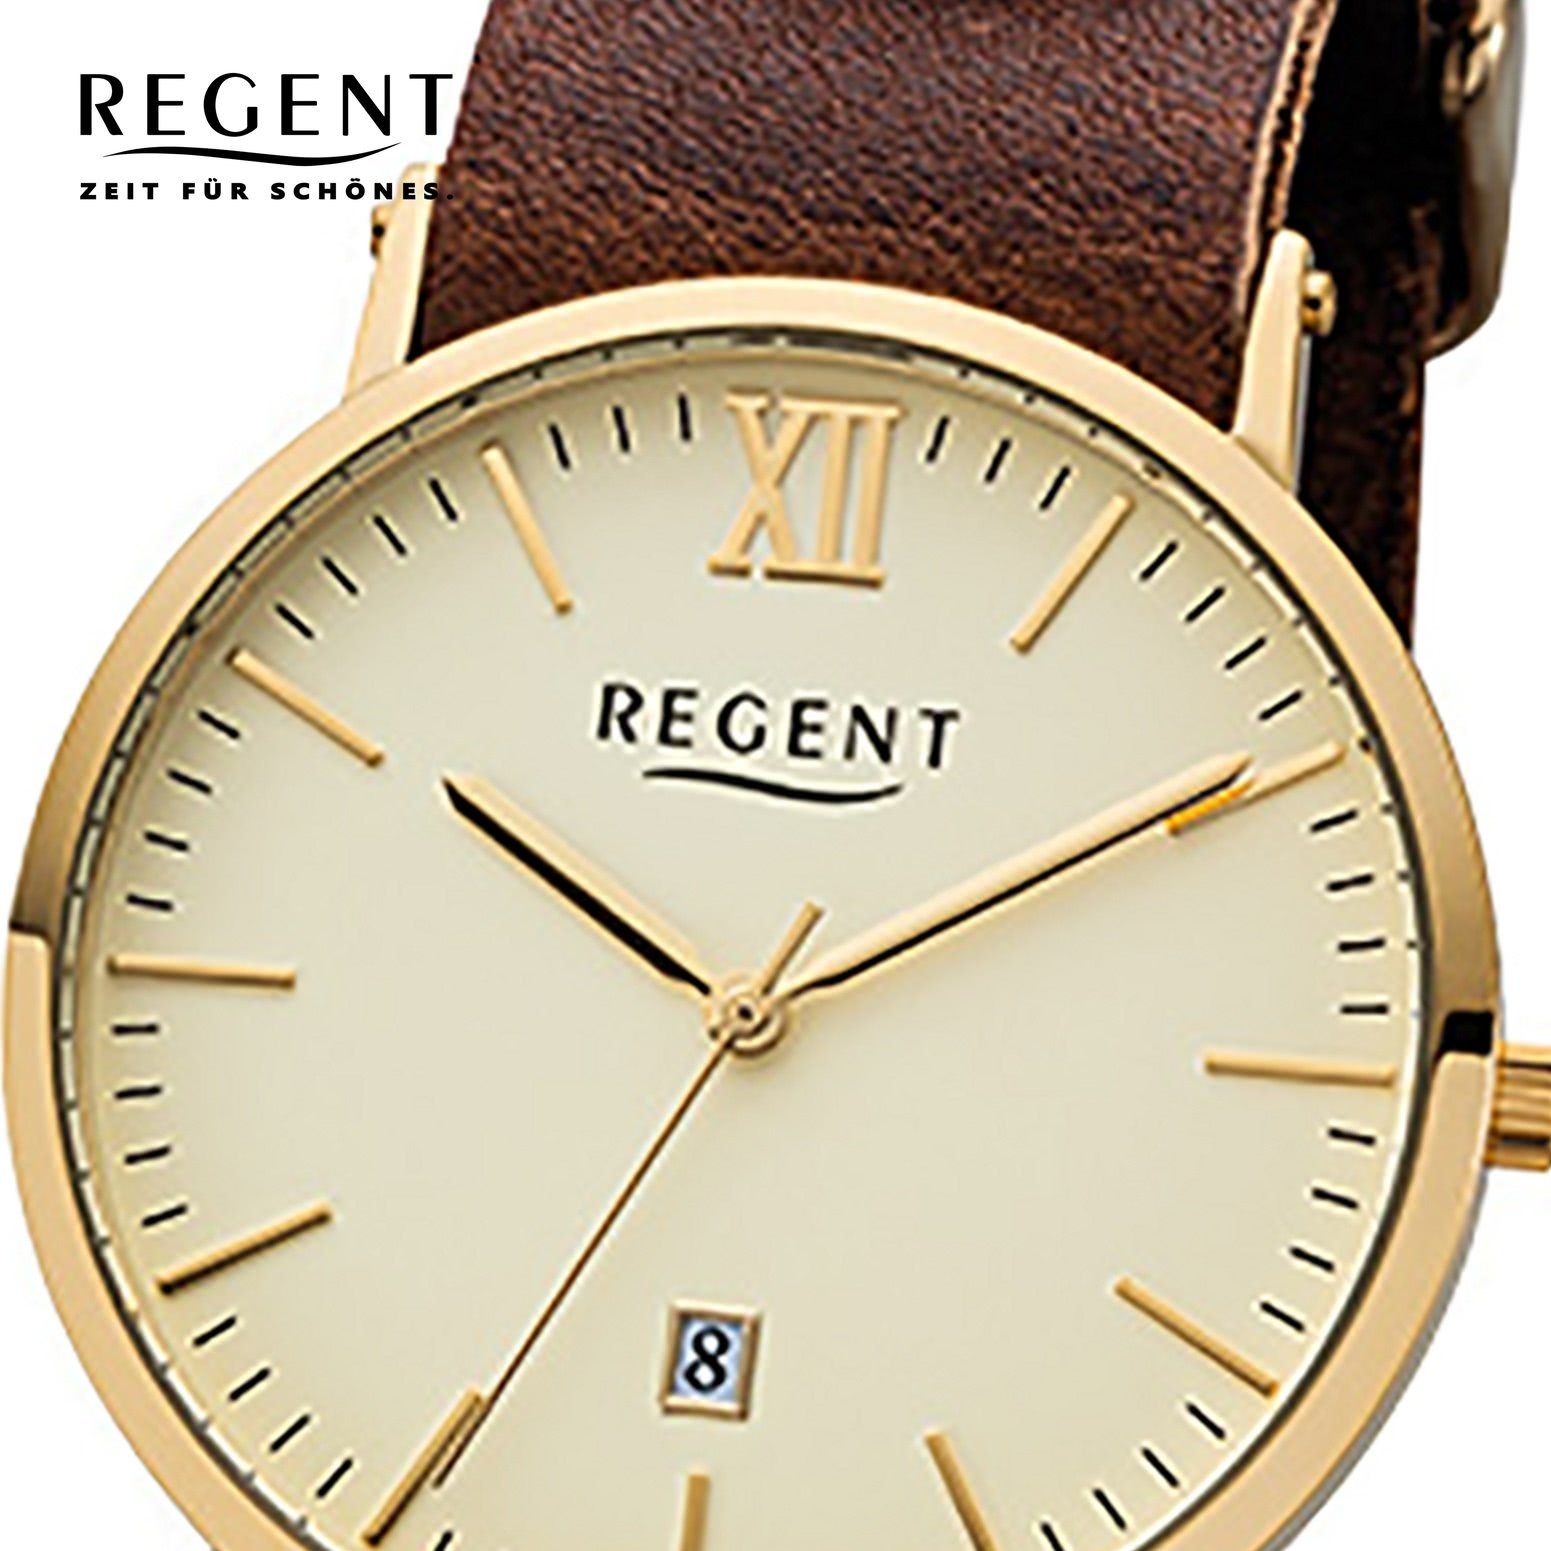 Regent Quarzuhr Regent Herren-Armbanduhr braun rund, groß 40mm), Armbanduhr Lederarmband, (ca. ionenplattiert gold Analog, Gehäuse Herren